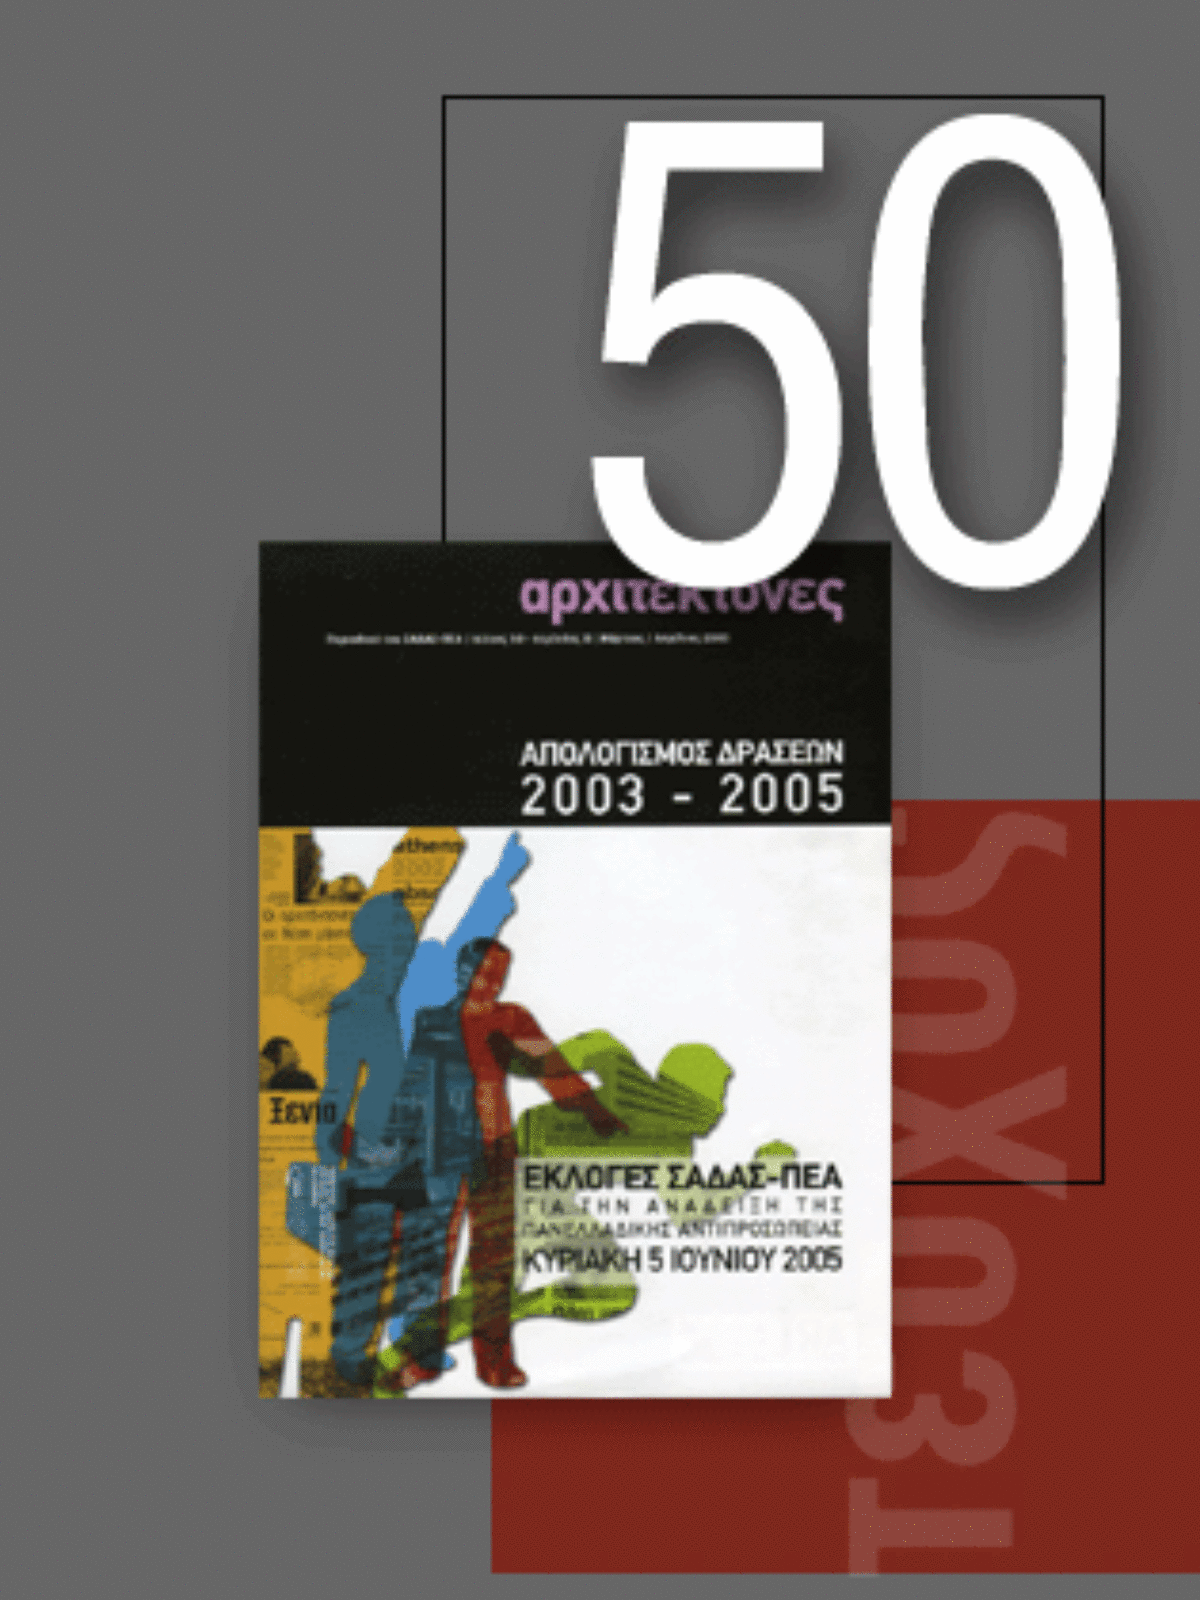 «Αρχιτέκτονες» Τεύχος 50, Περίοδος Β’, Μάρτιος/Aπρίλιος 2005 | Απολογισμός δράσεων 2003 – 2005 | Εκλογές ΣΑΔΑΣ-ΠΕΑ, 5 Ιουνίου 2005